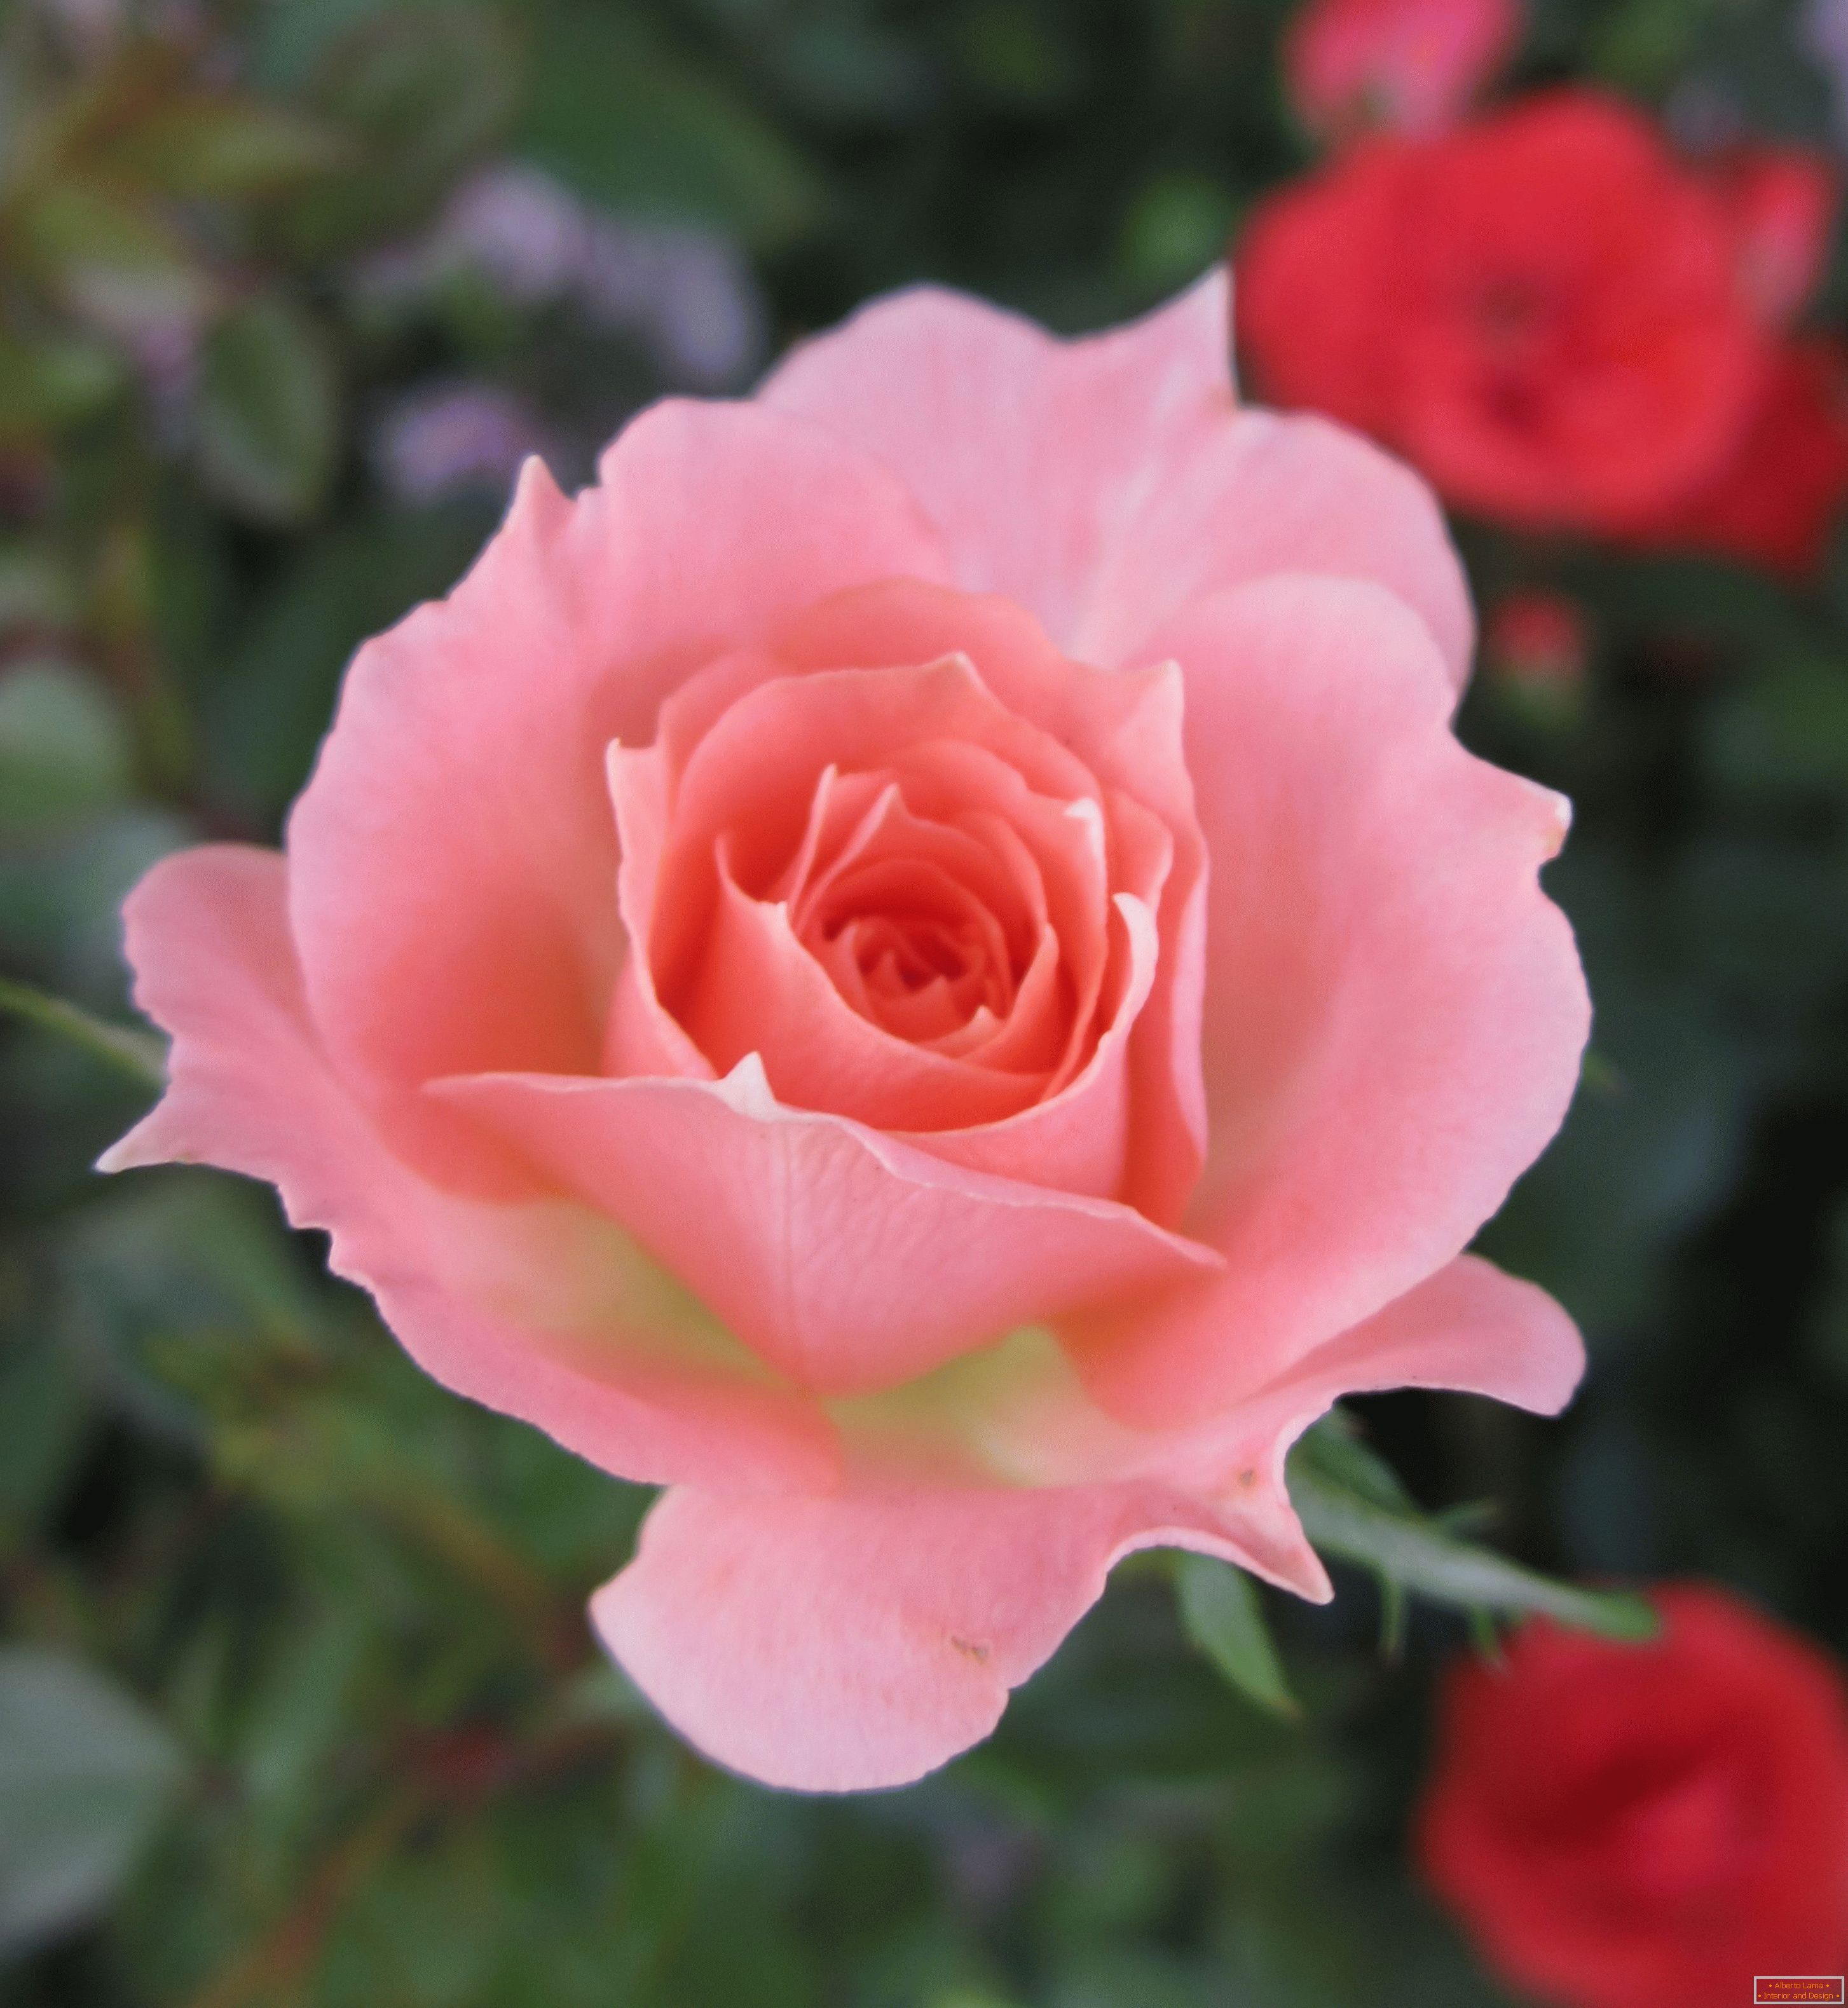 Ruža roze boje u okruženju crvenog cvijeća